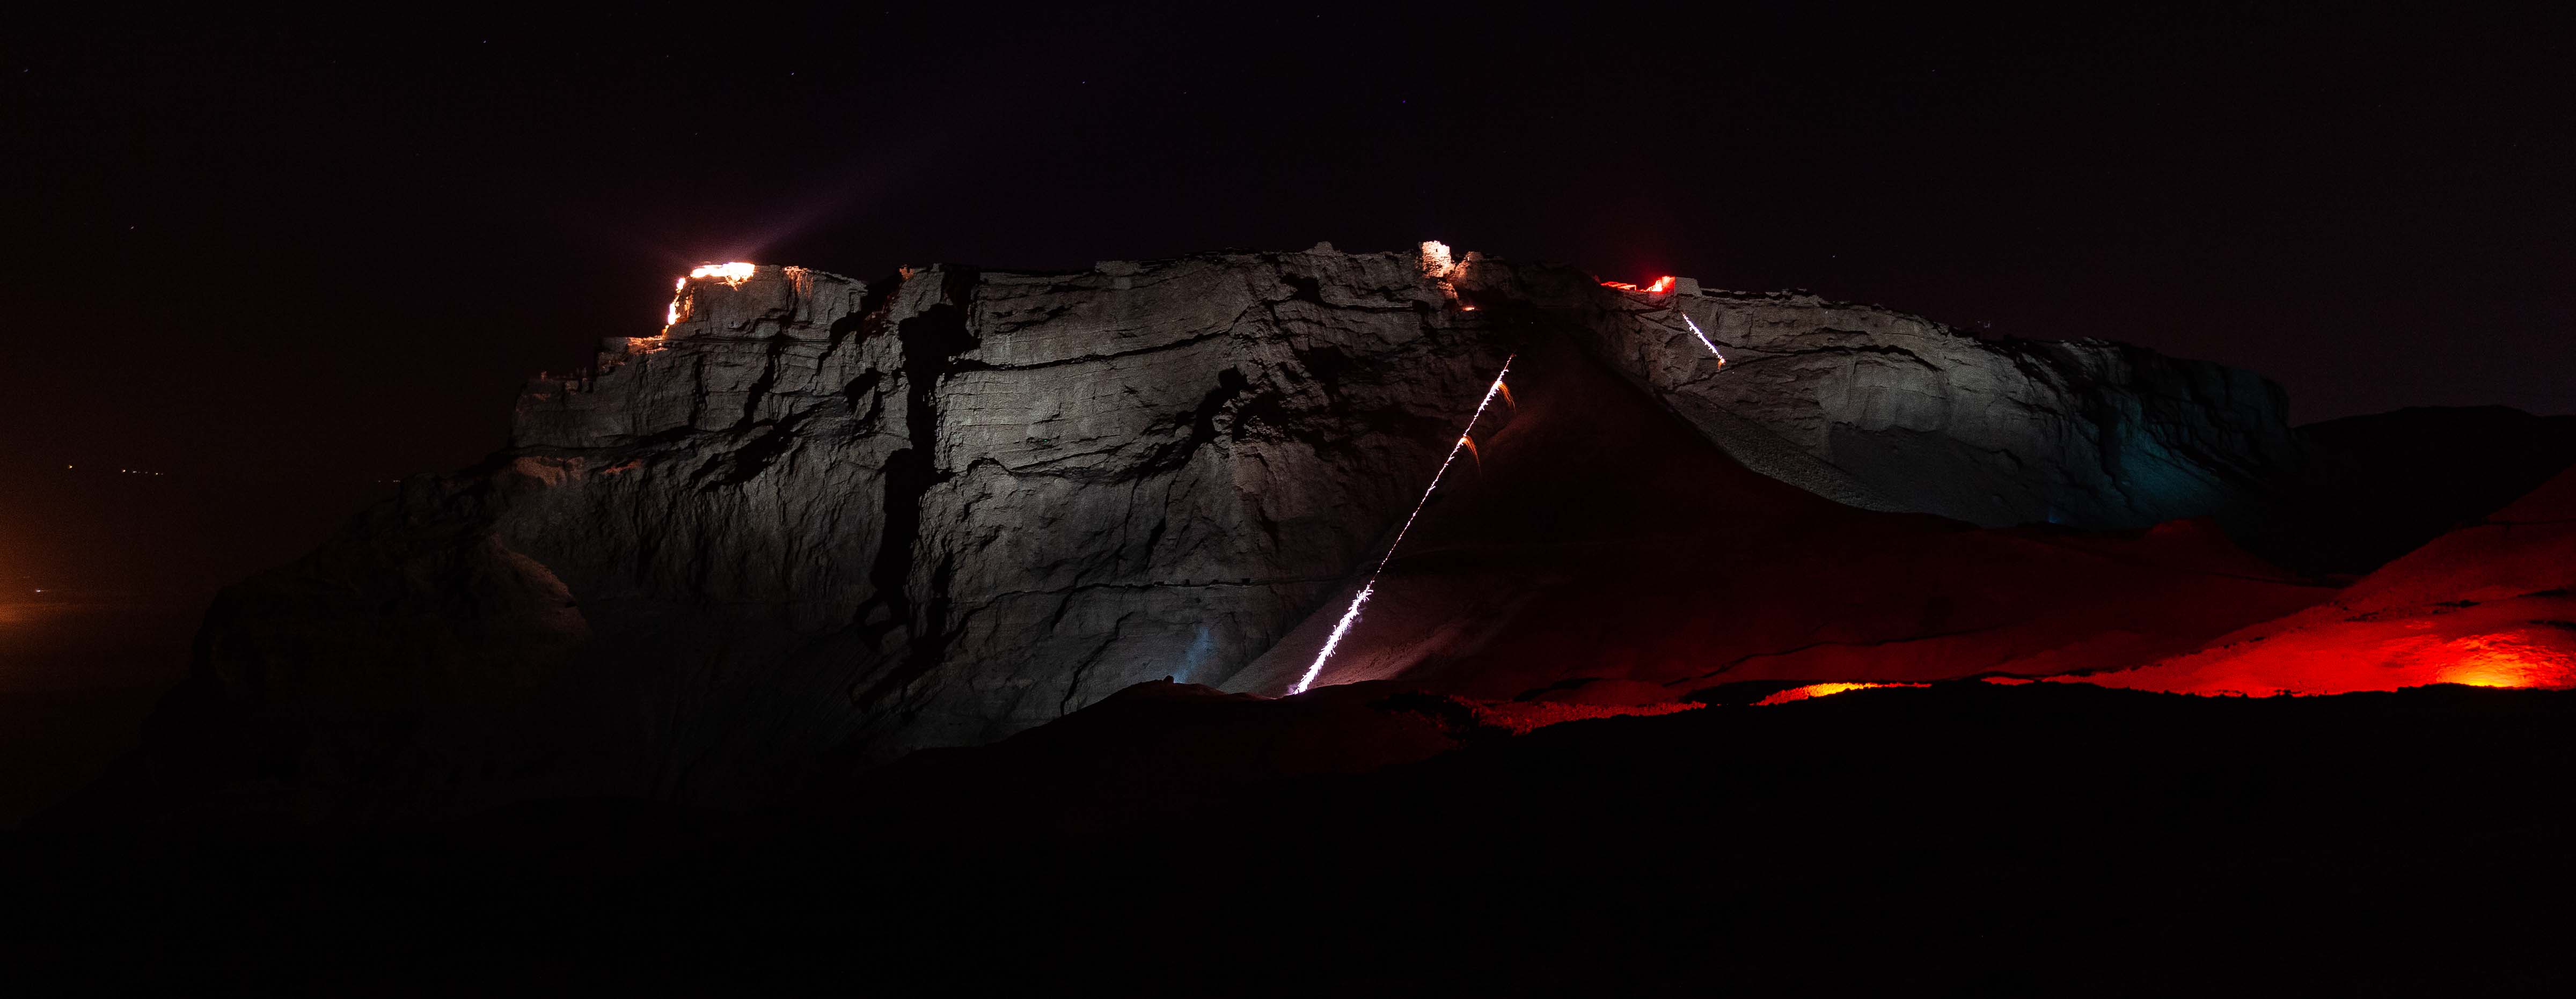 Israel, Southern Prov, Masada At Night Shooting Arrows, 2012, IMG 6418